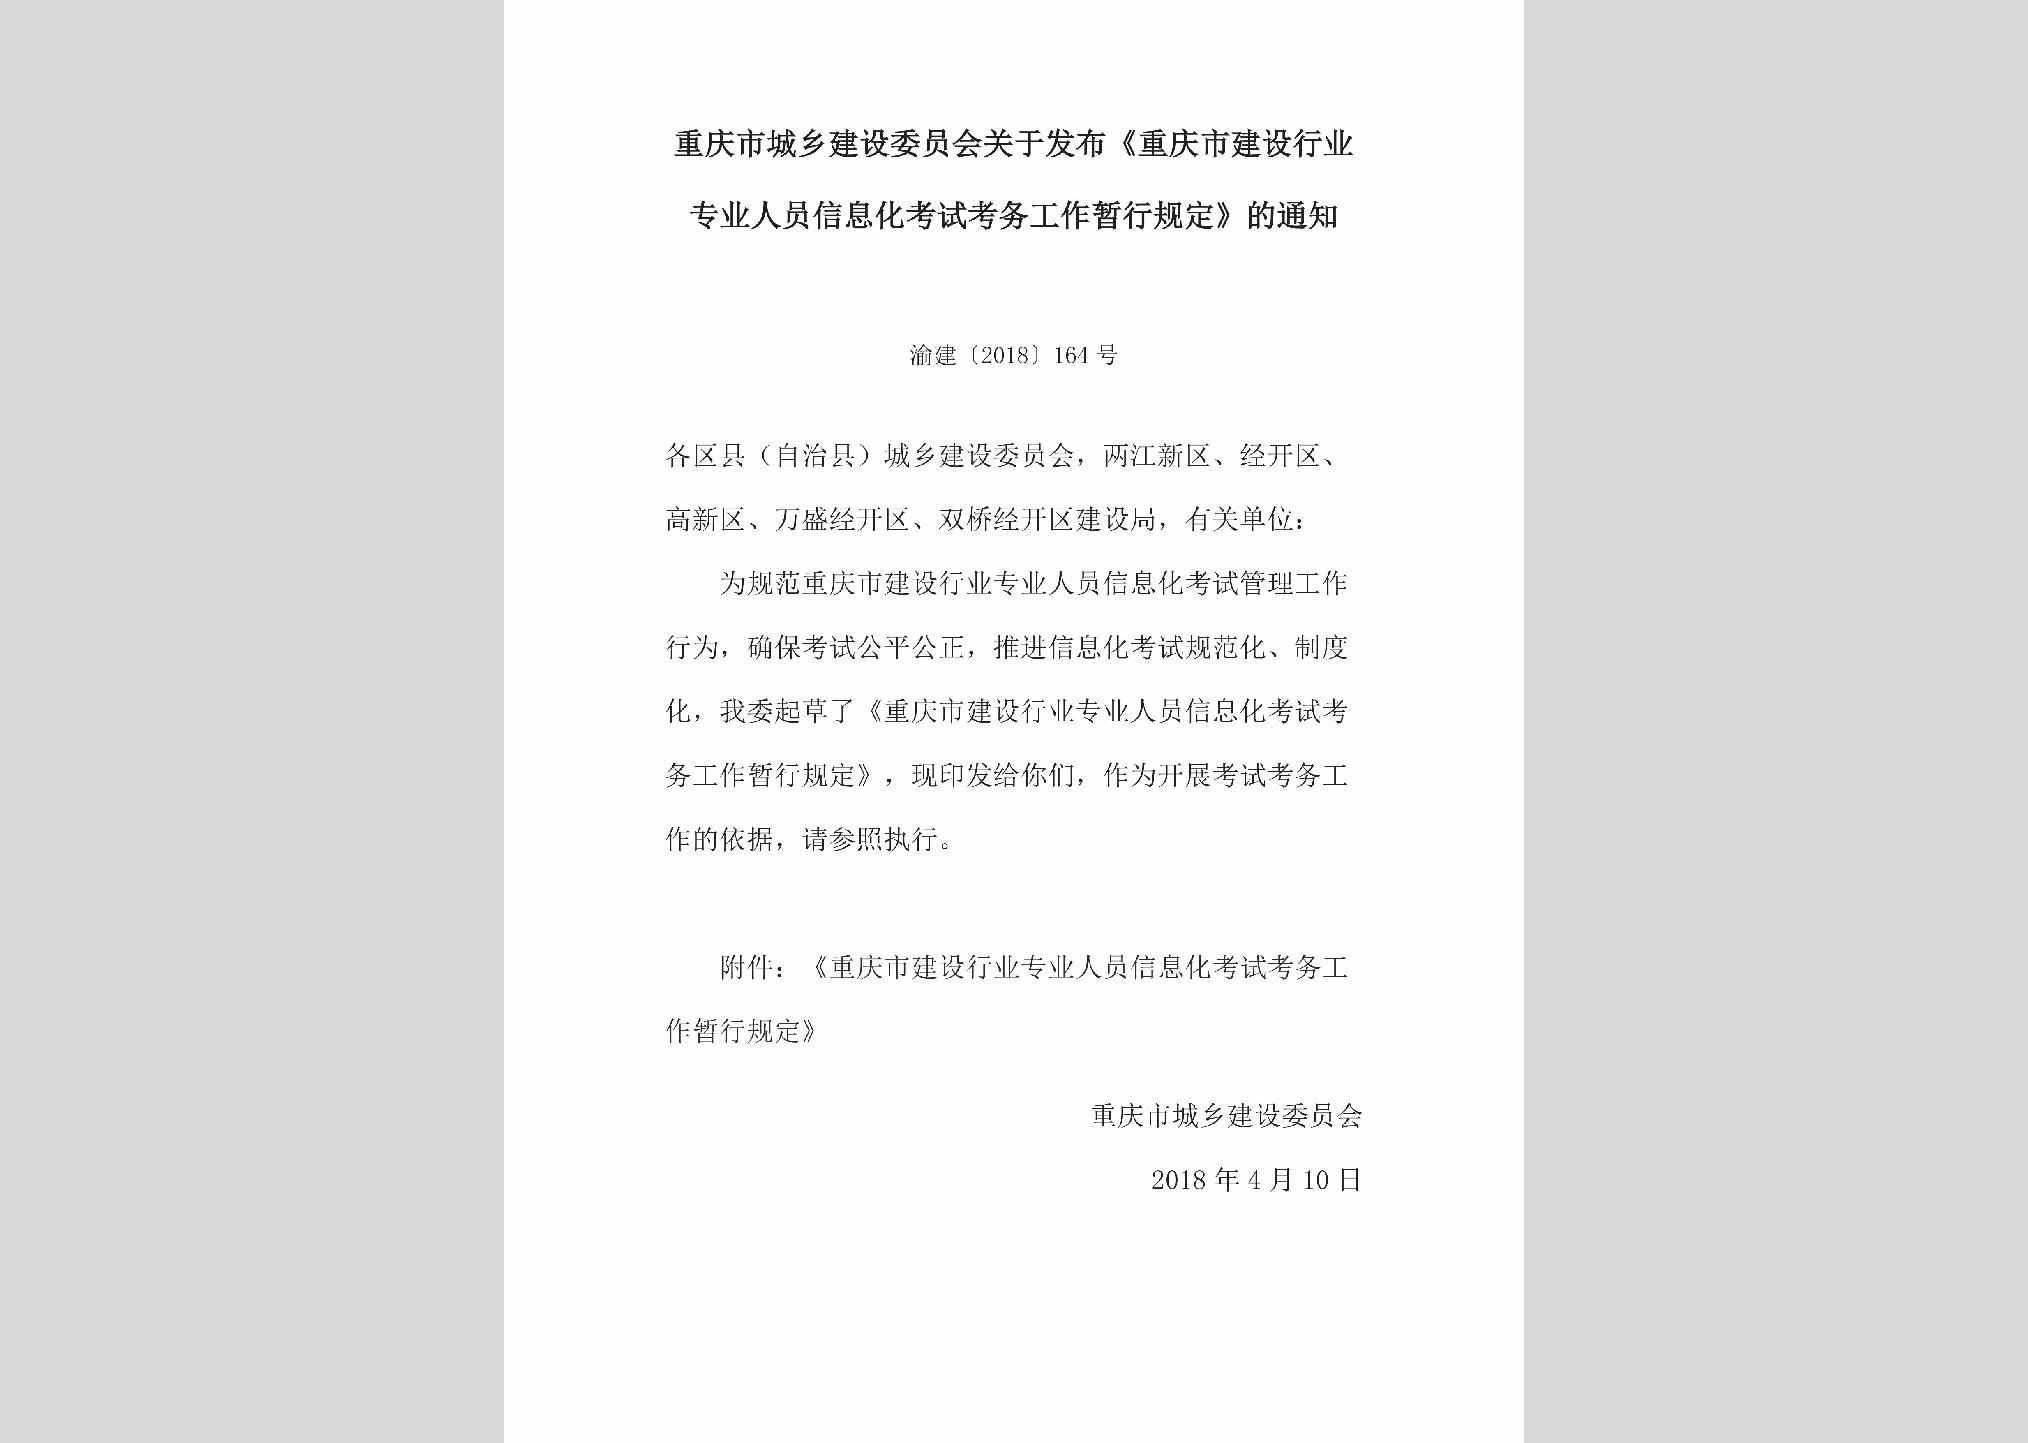 渝建[2018]164号：关于发布《重庆市建设行业专业人员信息化考试考务工作暂行规定》的通知